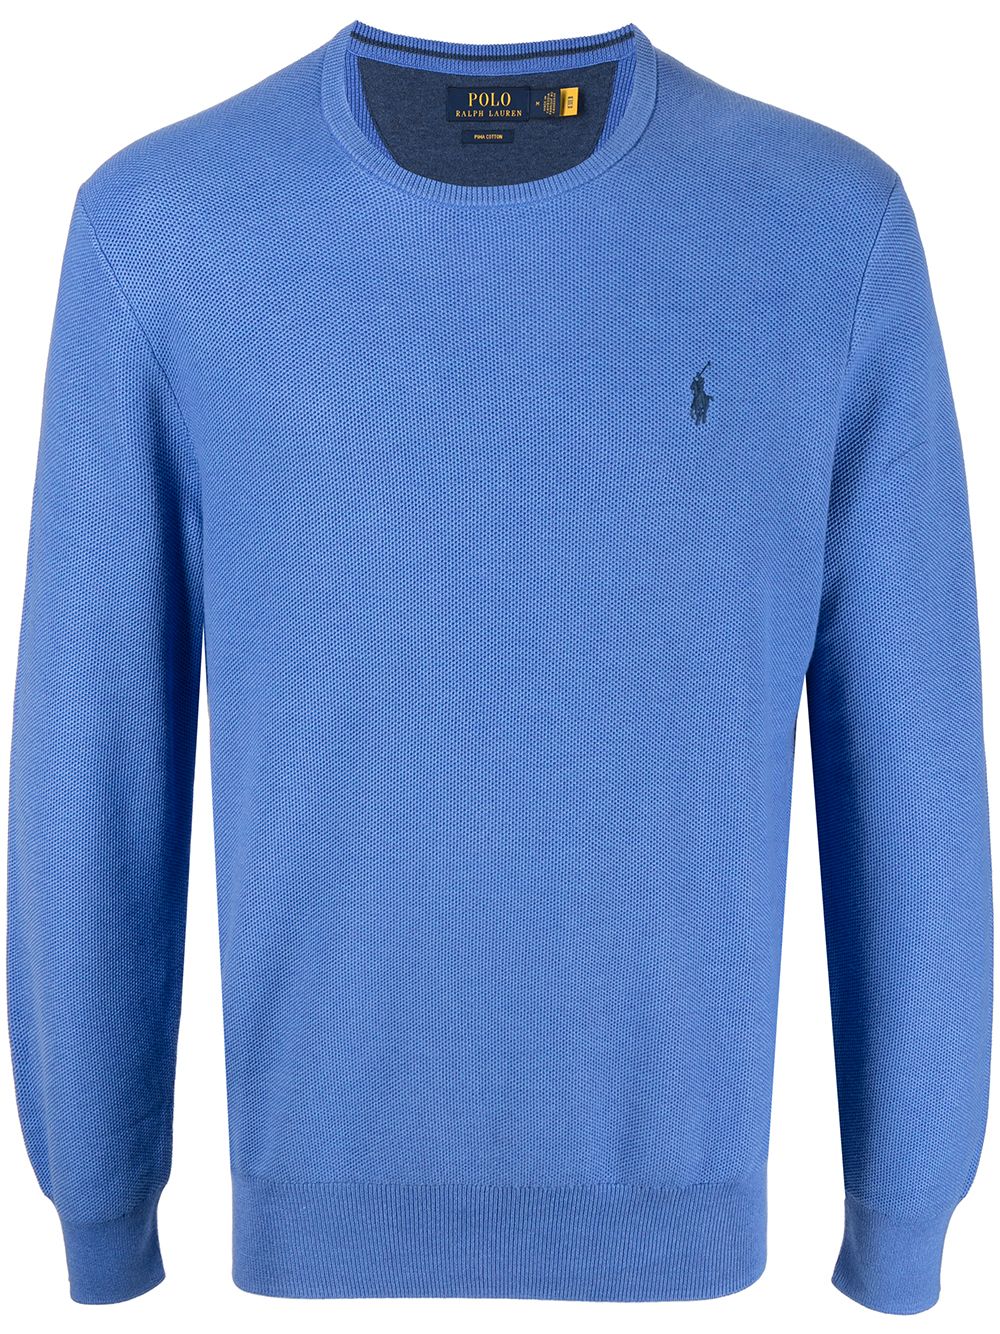 Polo Ralph Lauren Sweatshirt mit Polo Pony - Blau von Polo Ralph Lauren